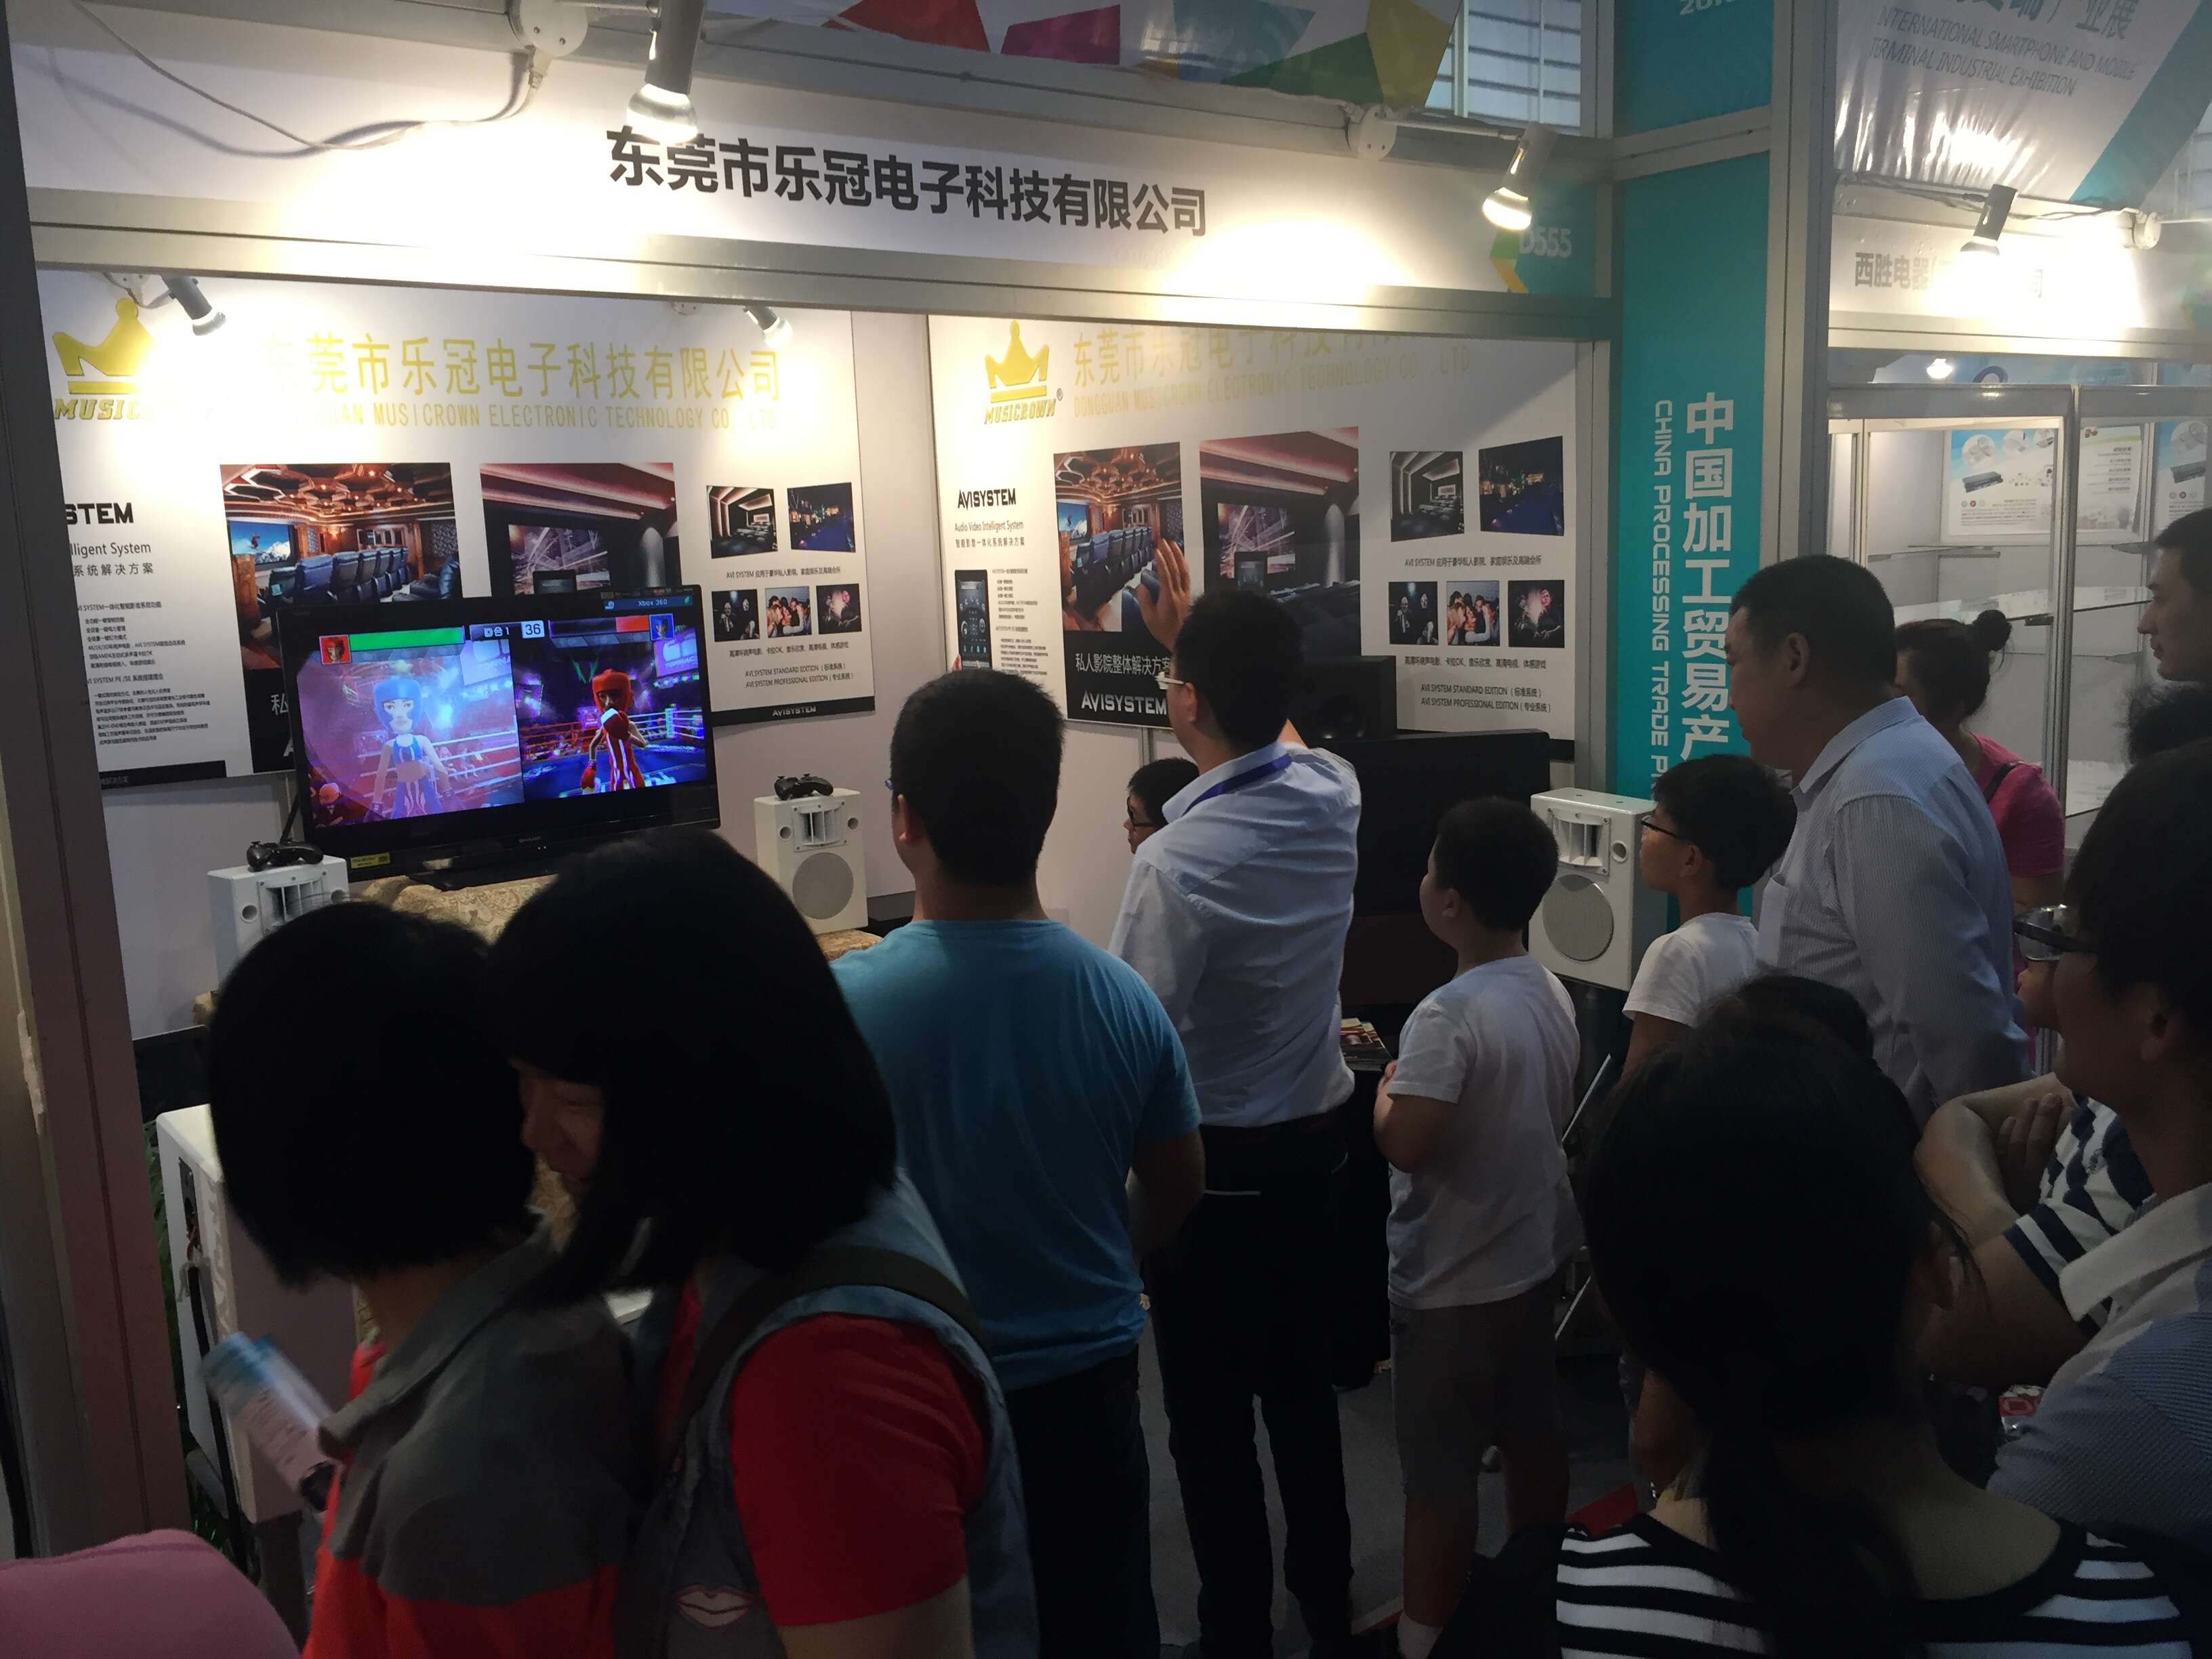 2016年中国加工贸易产品博览会